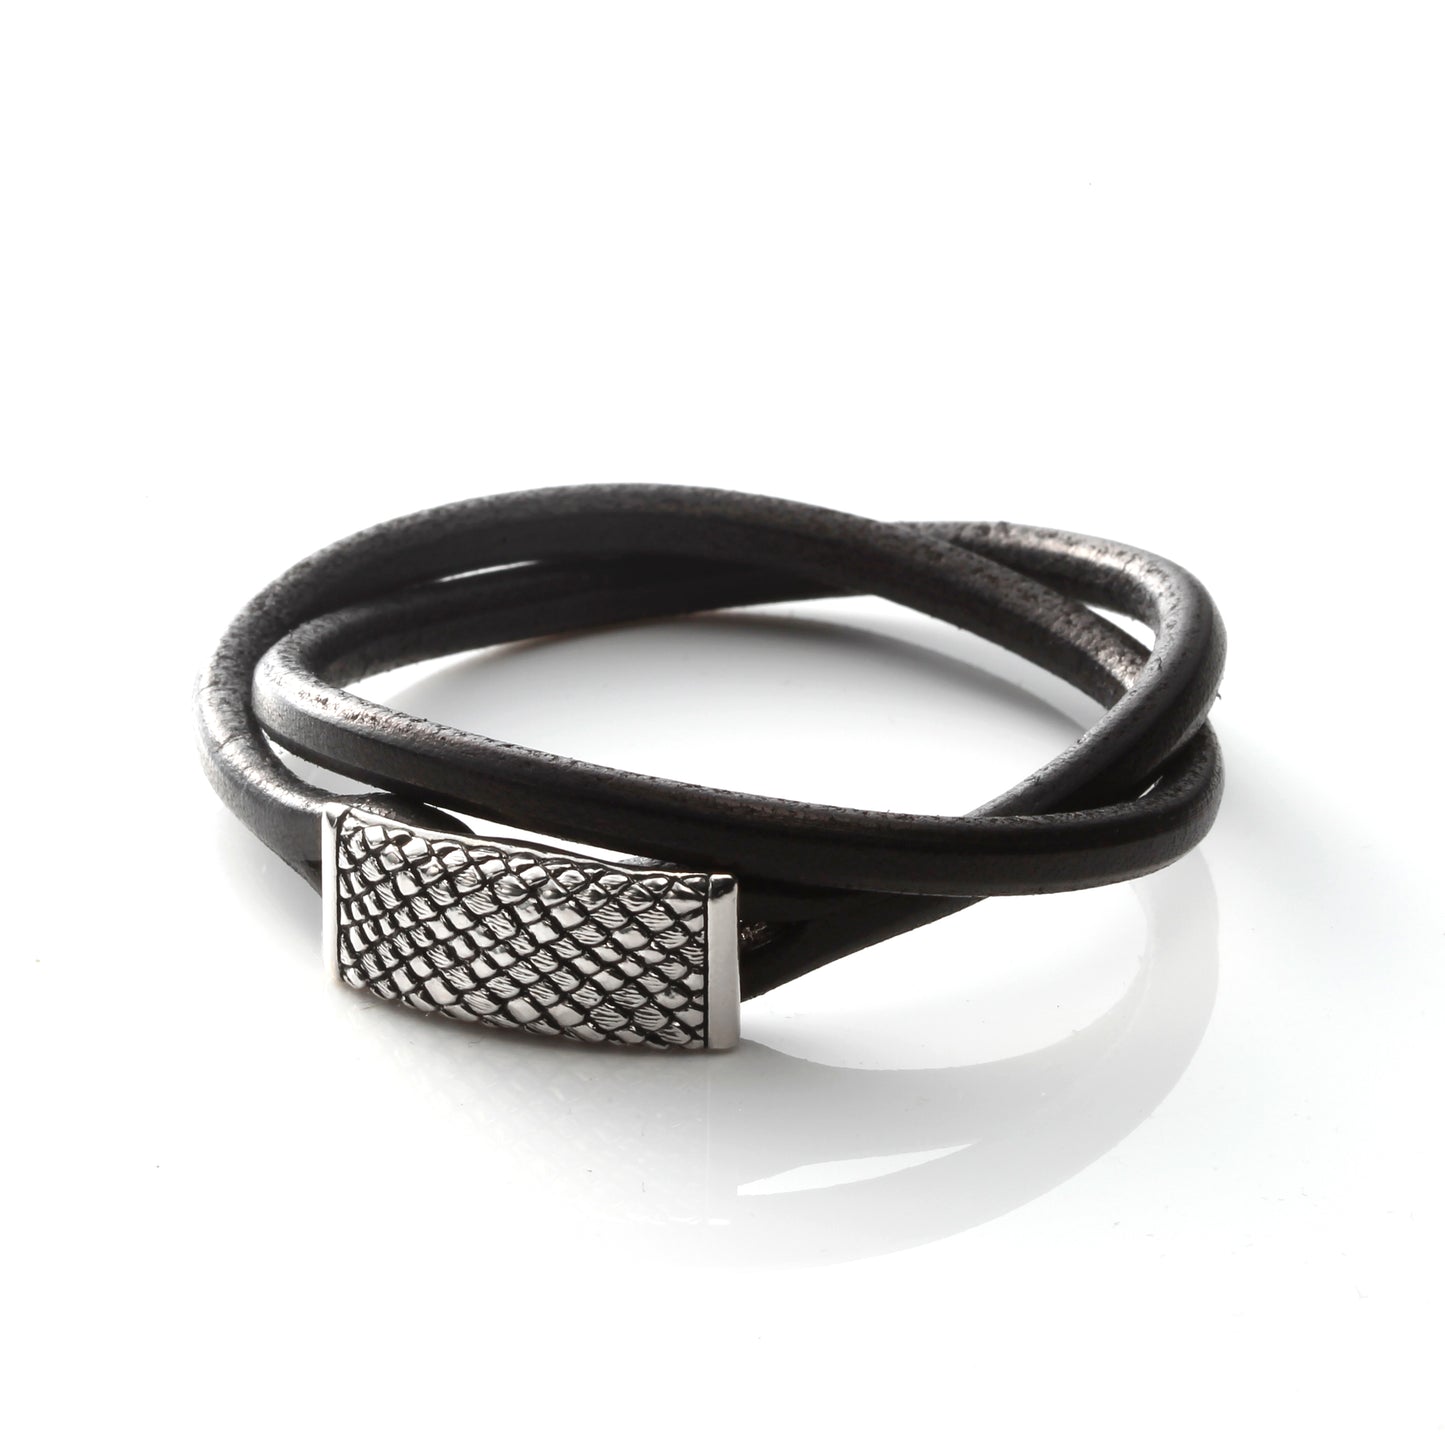 Square Leather Bracelet  - Silver Python Snake -